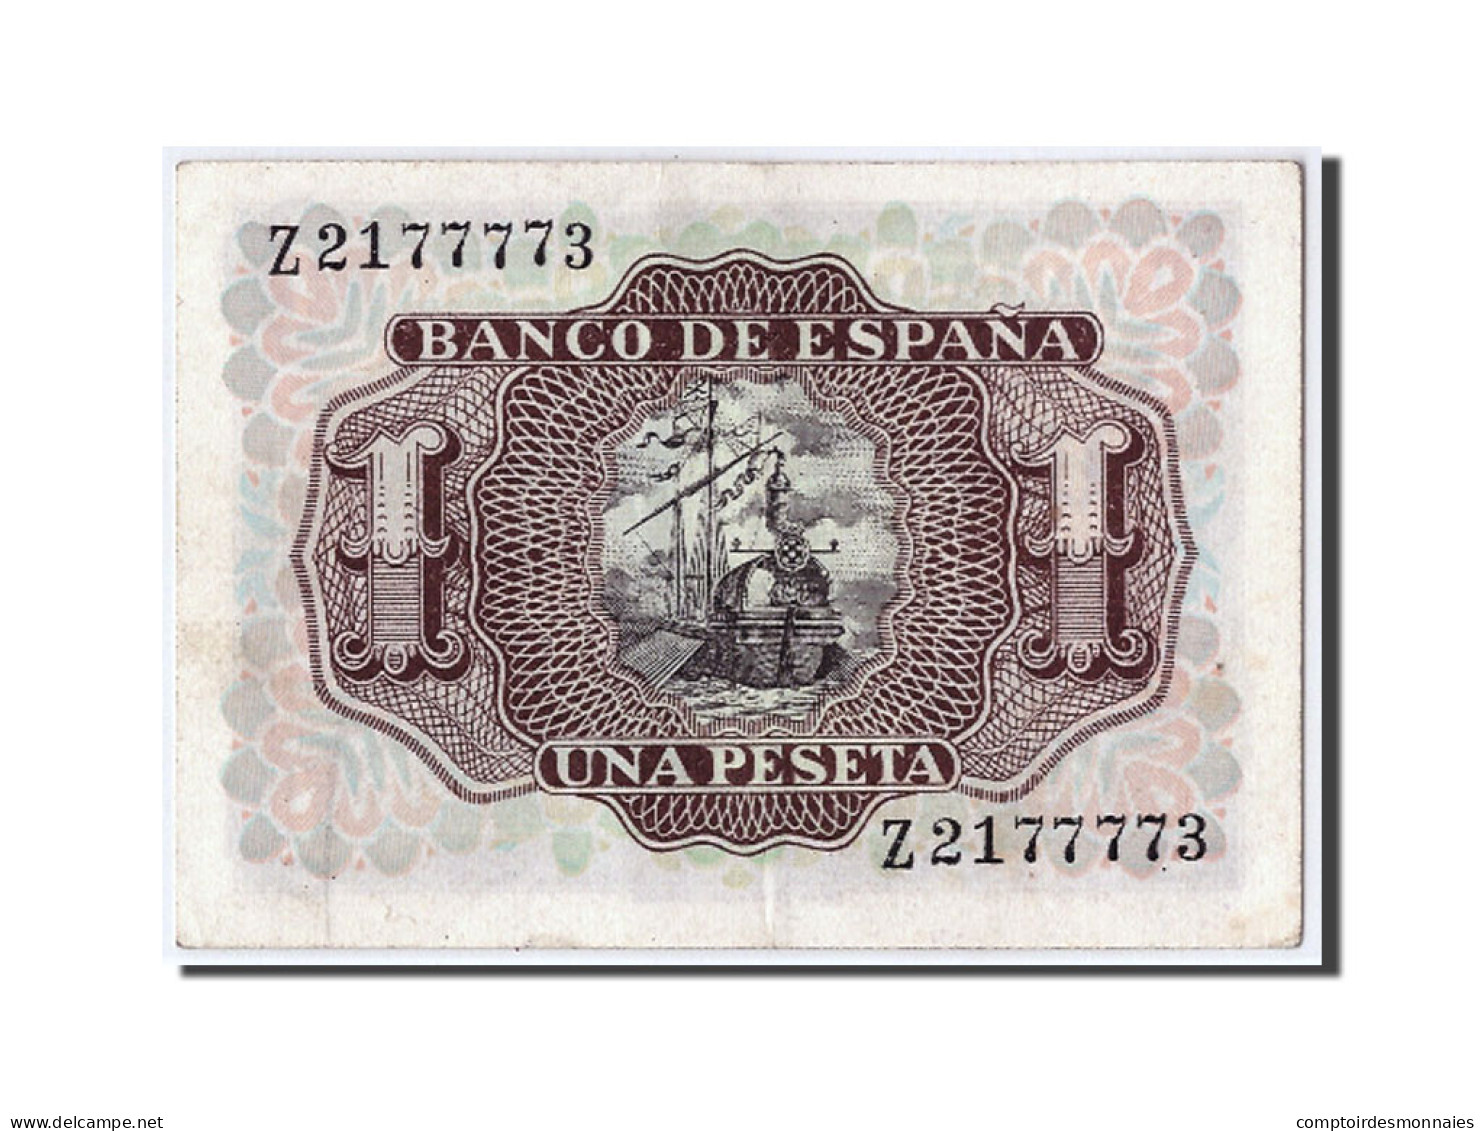 Billet, Espagne, 1 Peseta, 1953, 1953-07-22, KM:144a, SPL - 1-2 Pesetas